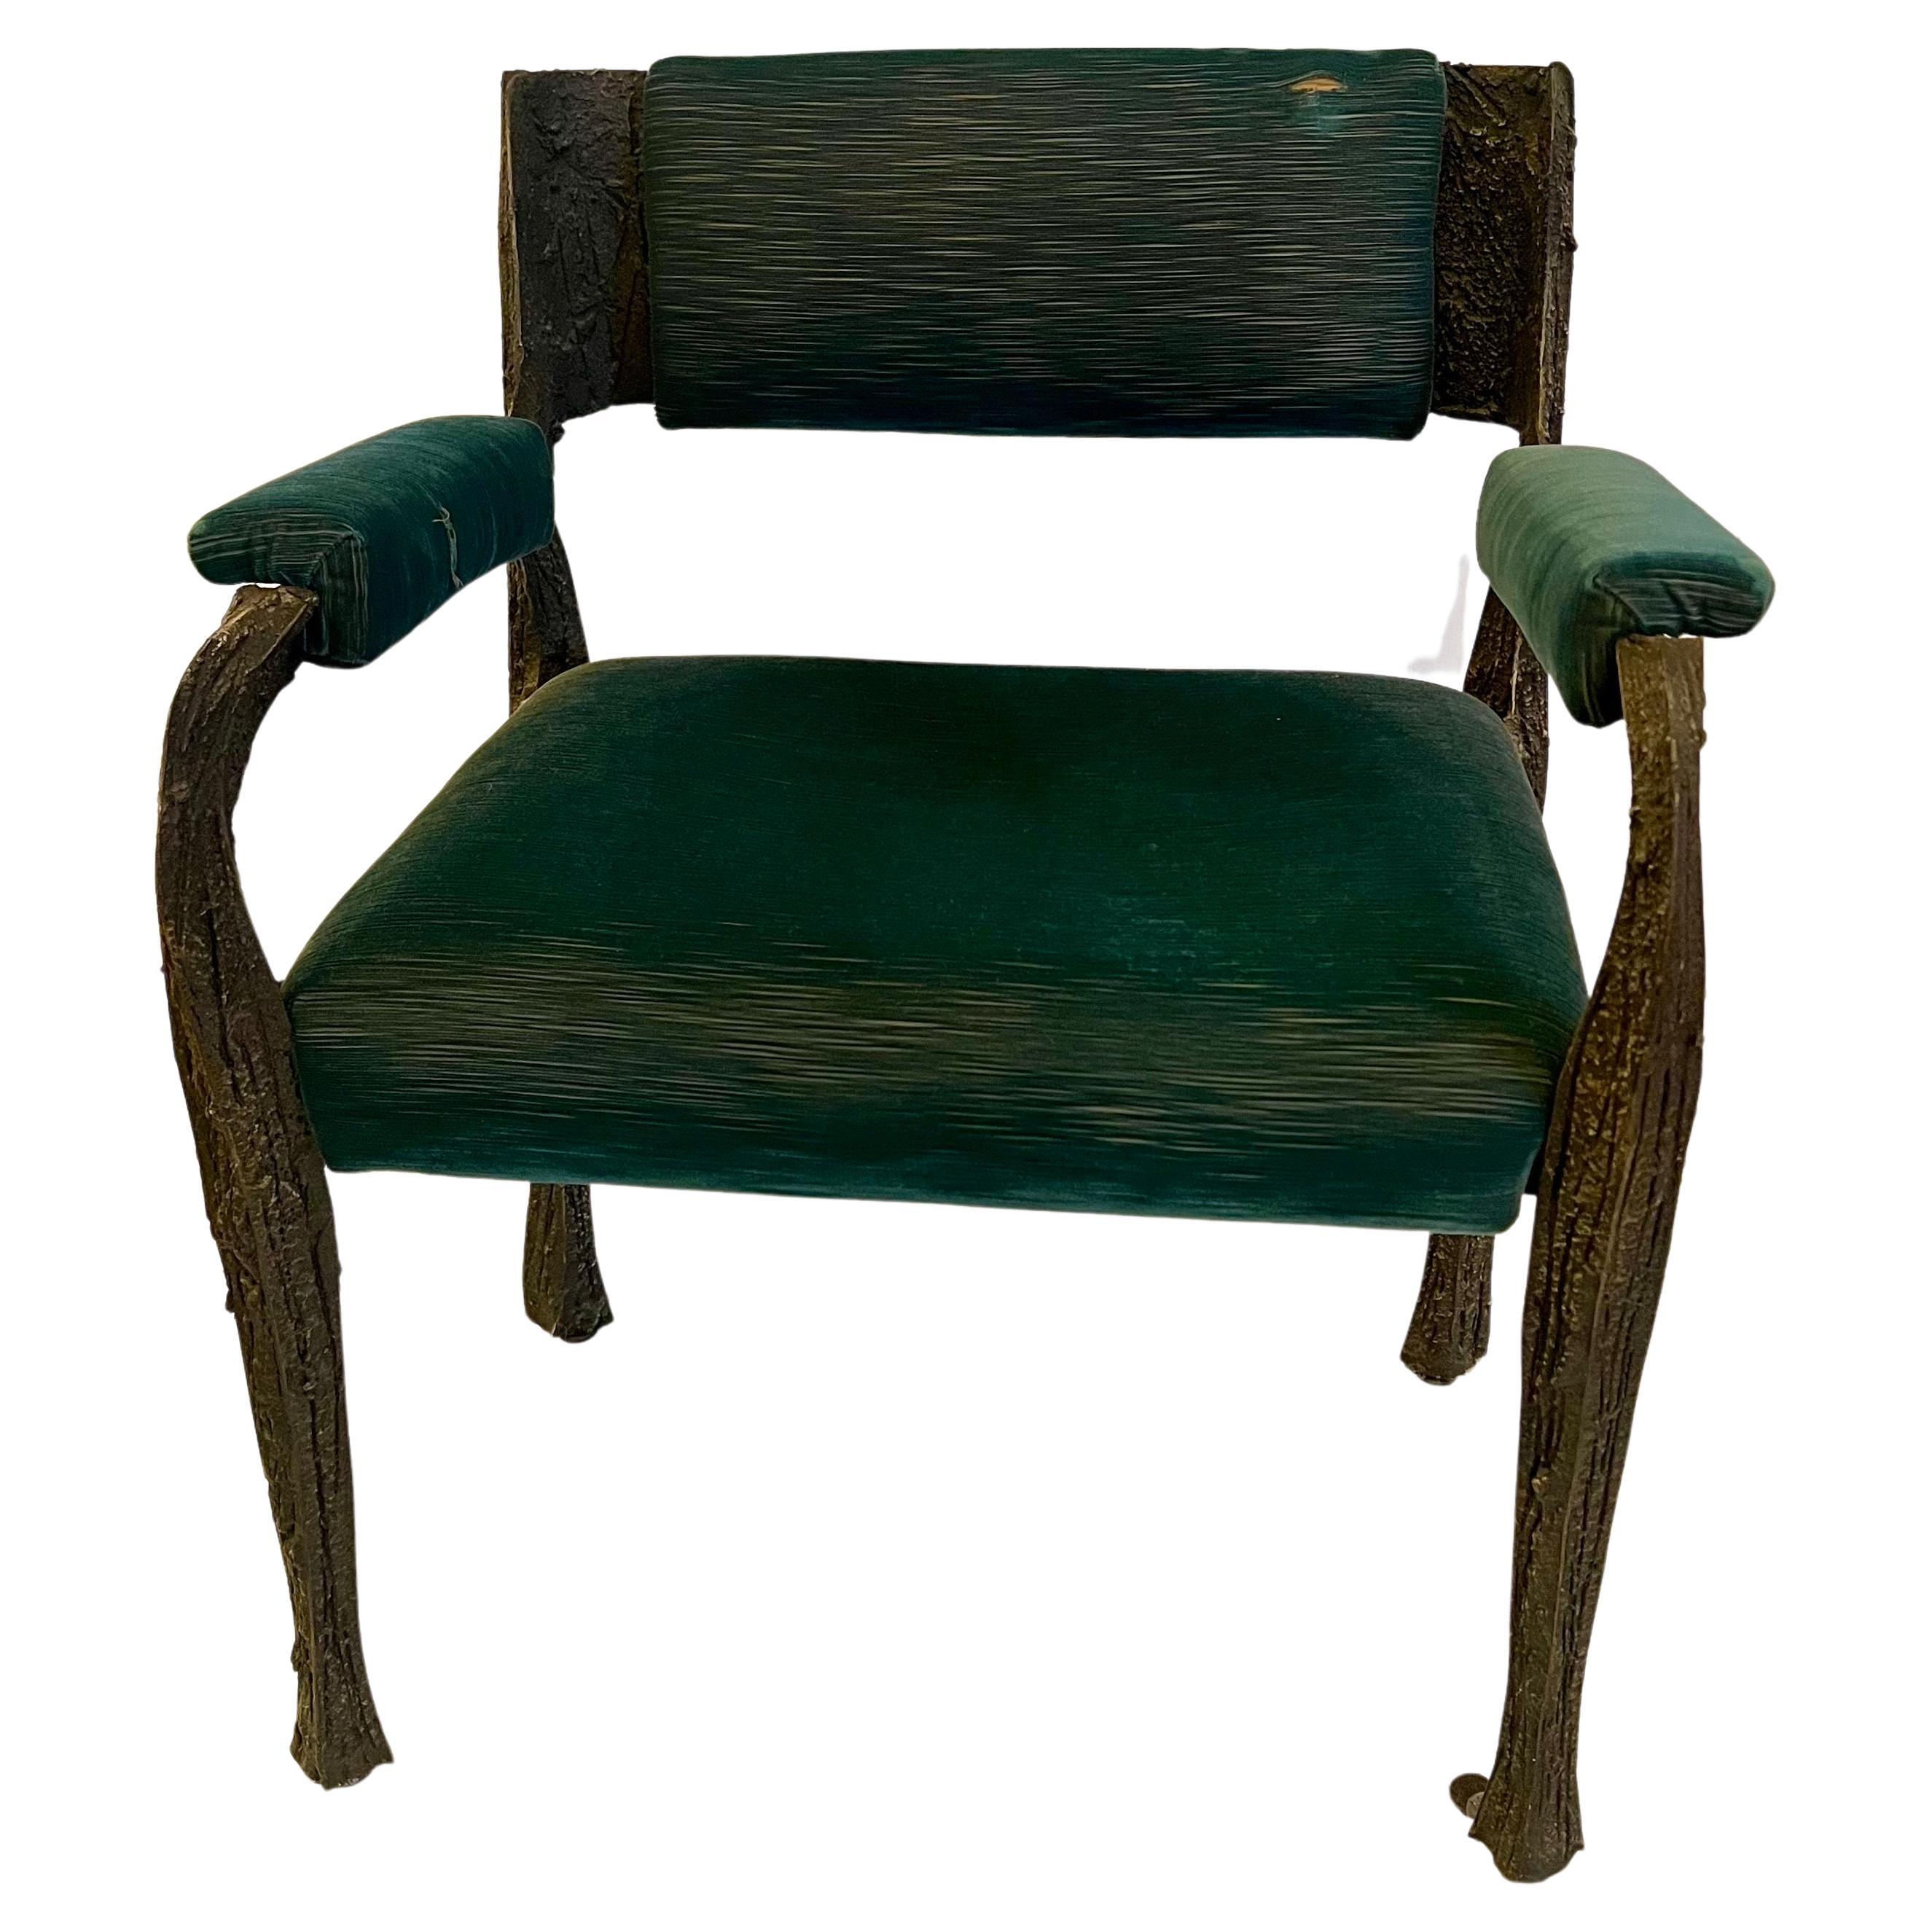 
Entdecken Sie den Inbegriff des brutalistischen Designs der Jahrhundertmitte mit diesem außergewöhnlichen Paar skulpturaler Sessel, die der bekannte Paul Evans um 1969 entworfen hat. Diese markanten Sessel sind ein Beweis für Evans' innovative